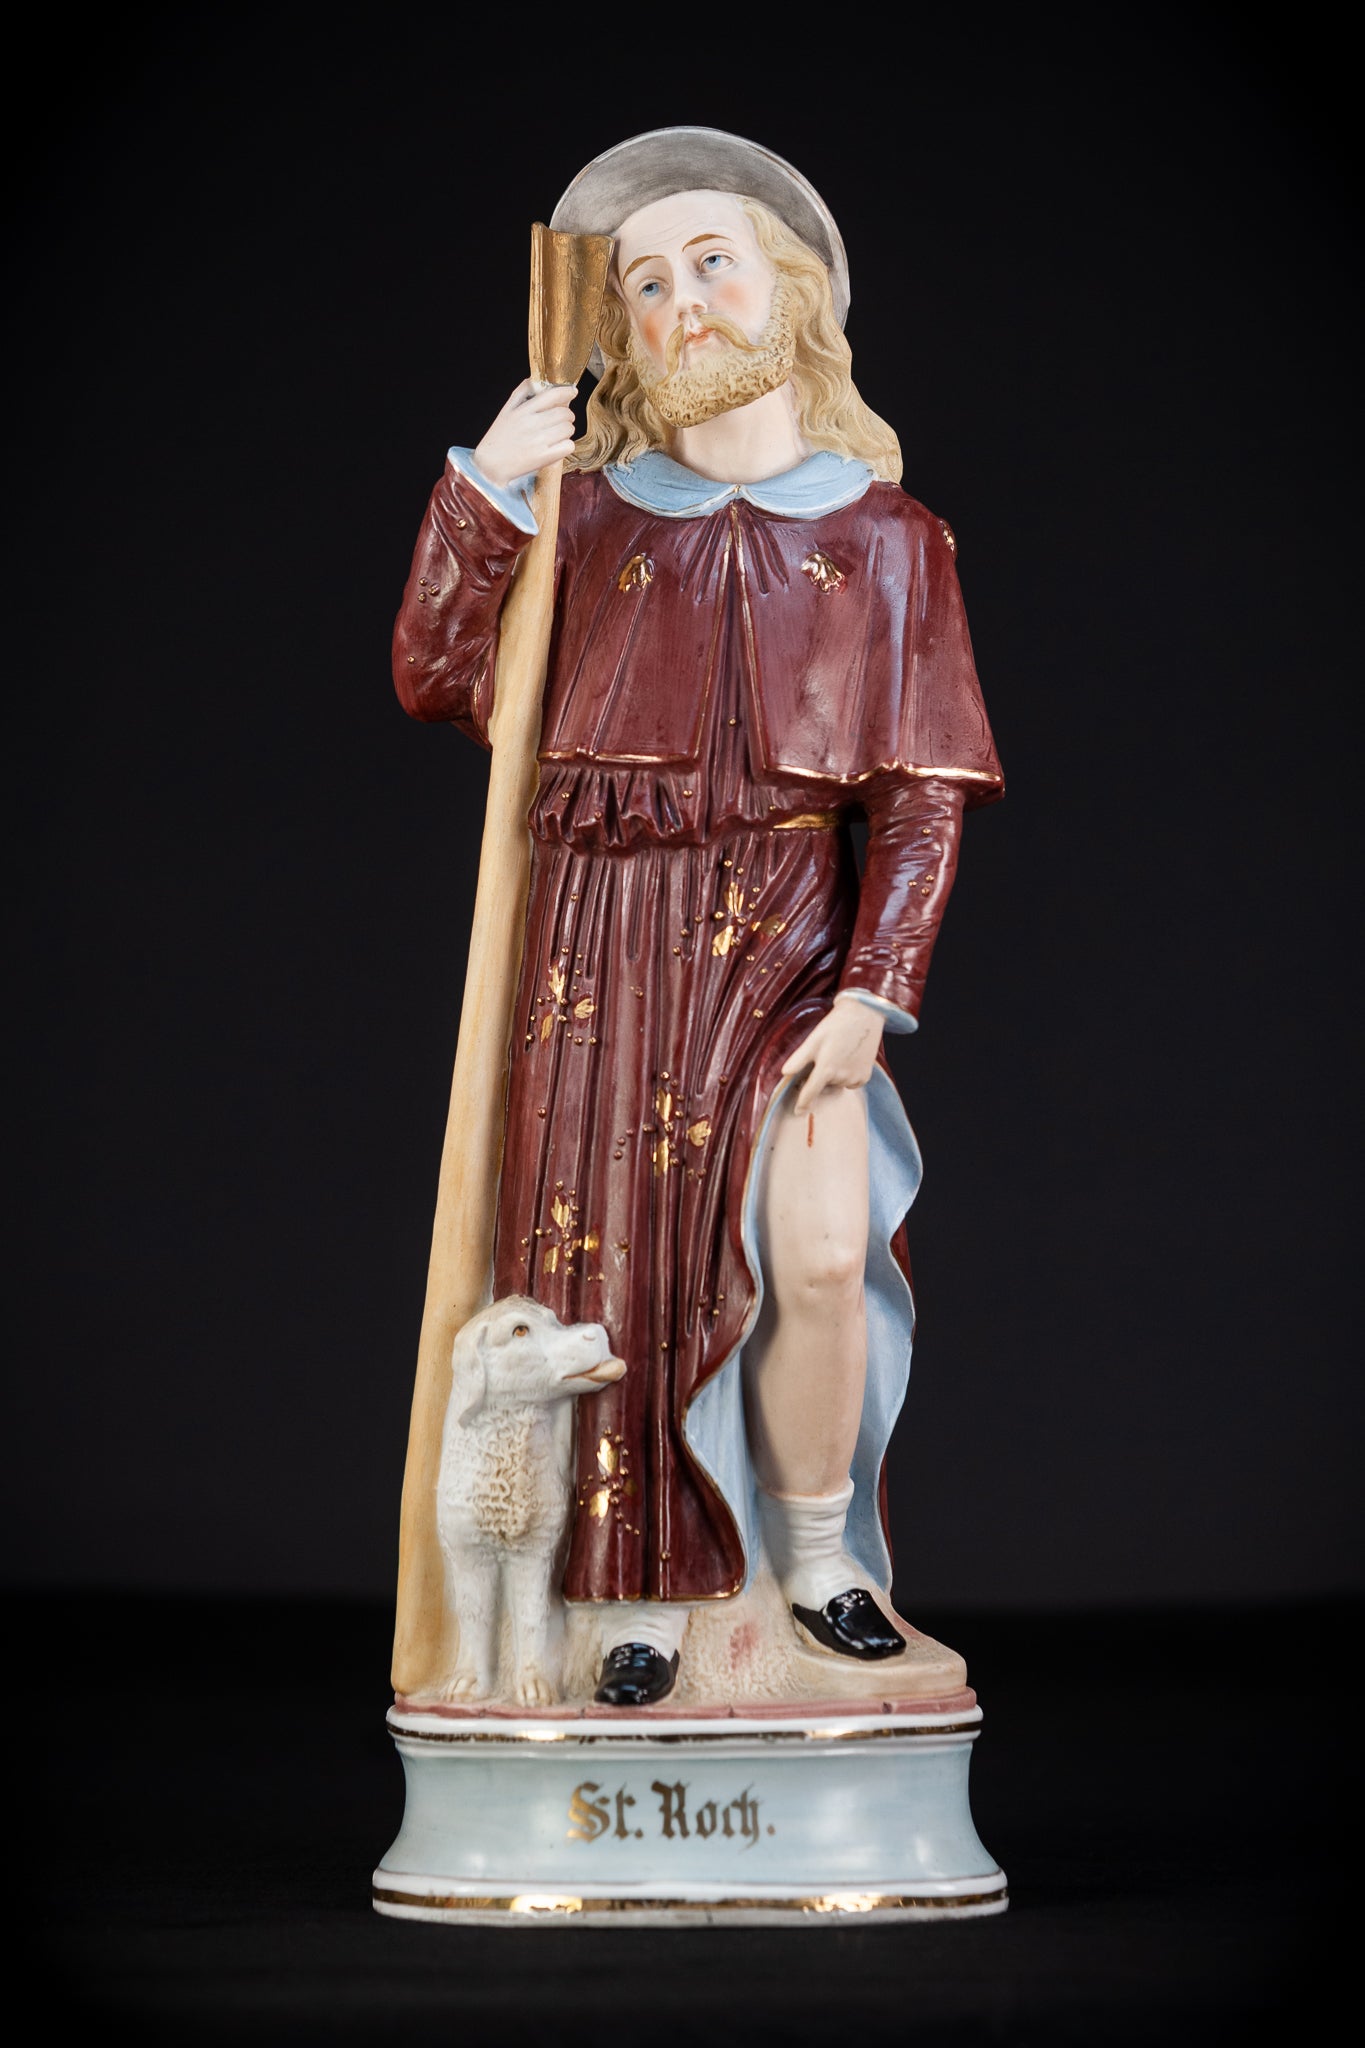  St Rochus Porcelain Statue 16.9''